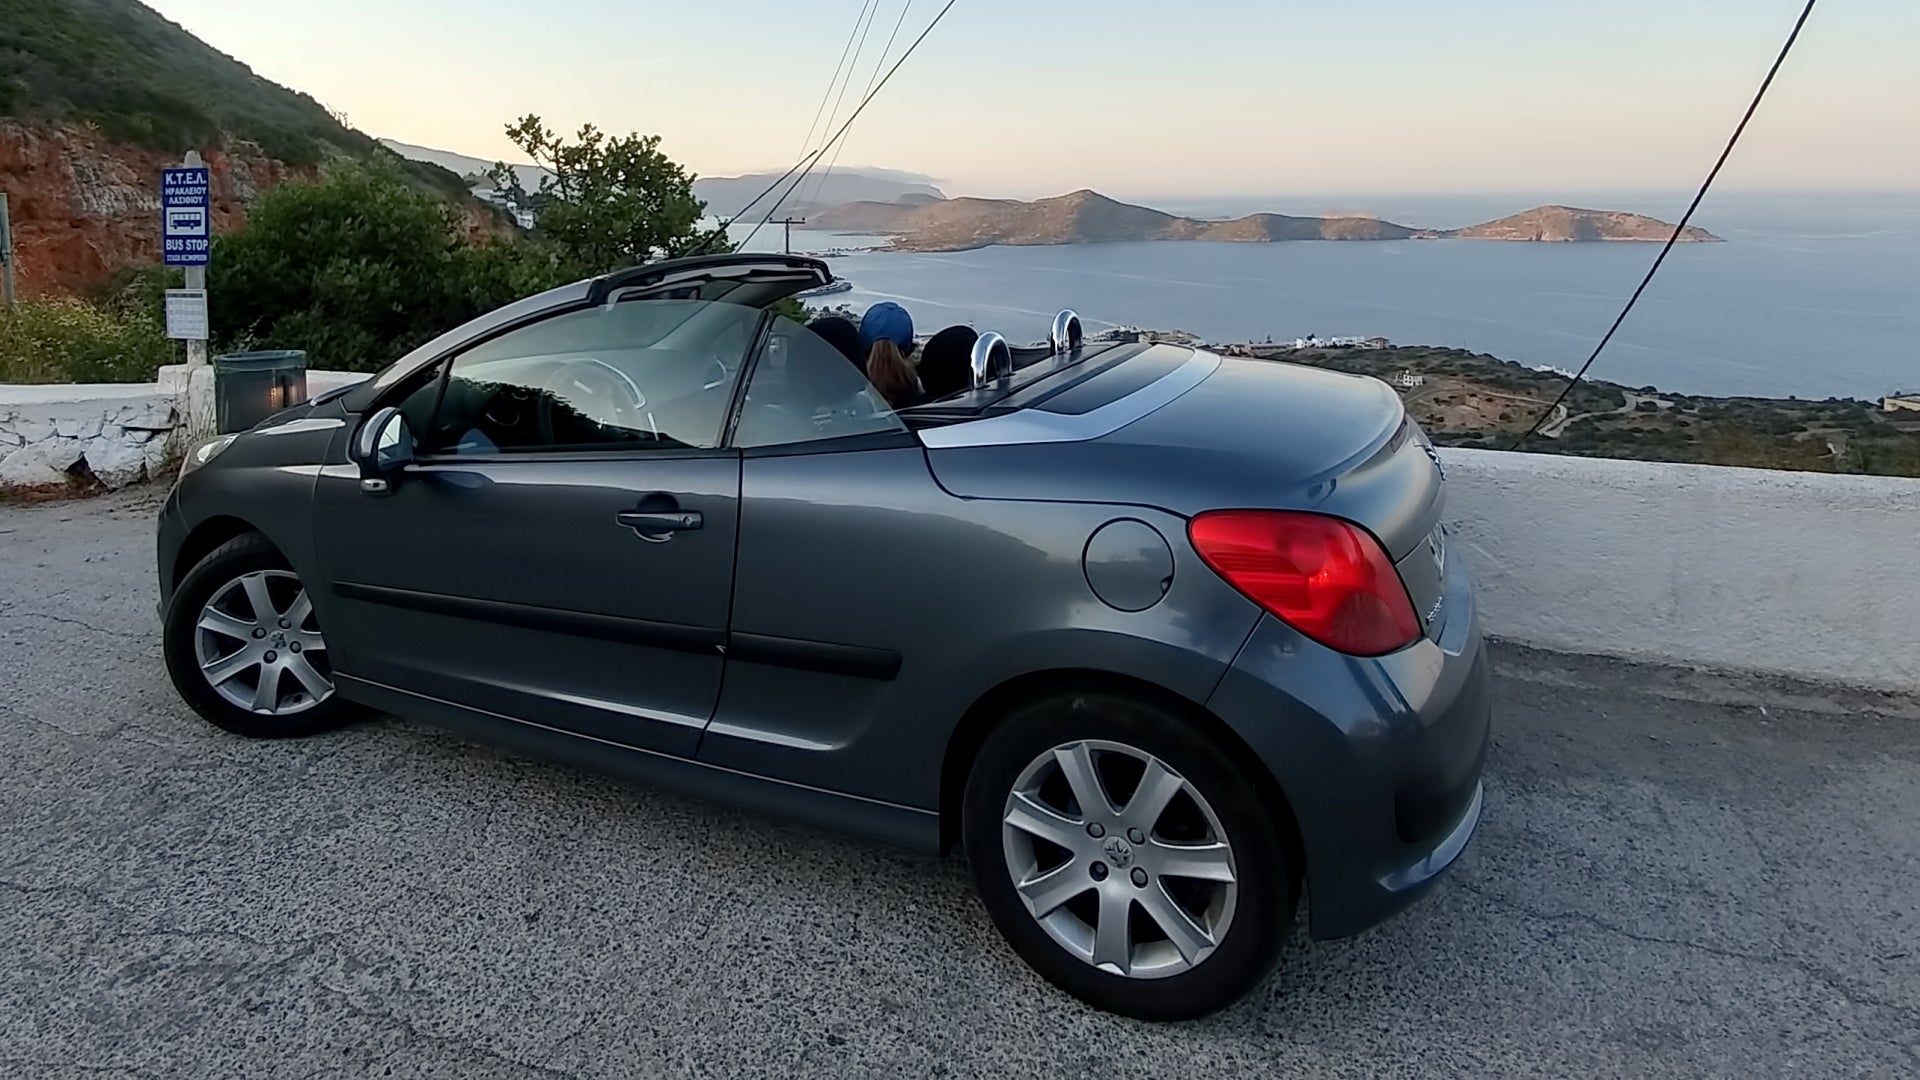 Peugeot-307-CC-Cabrio-rent-a-car-budva-montenegro